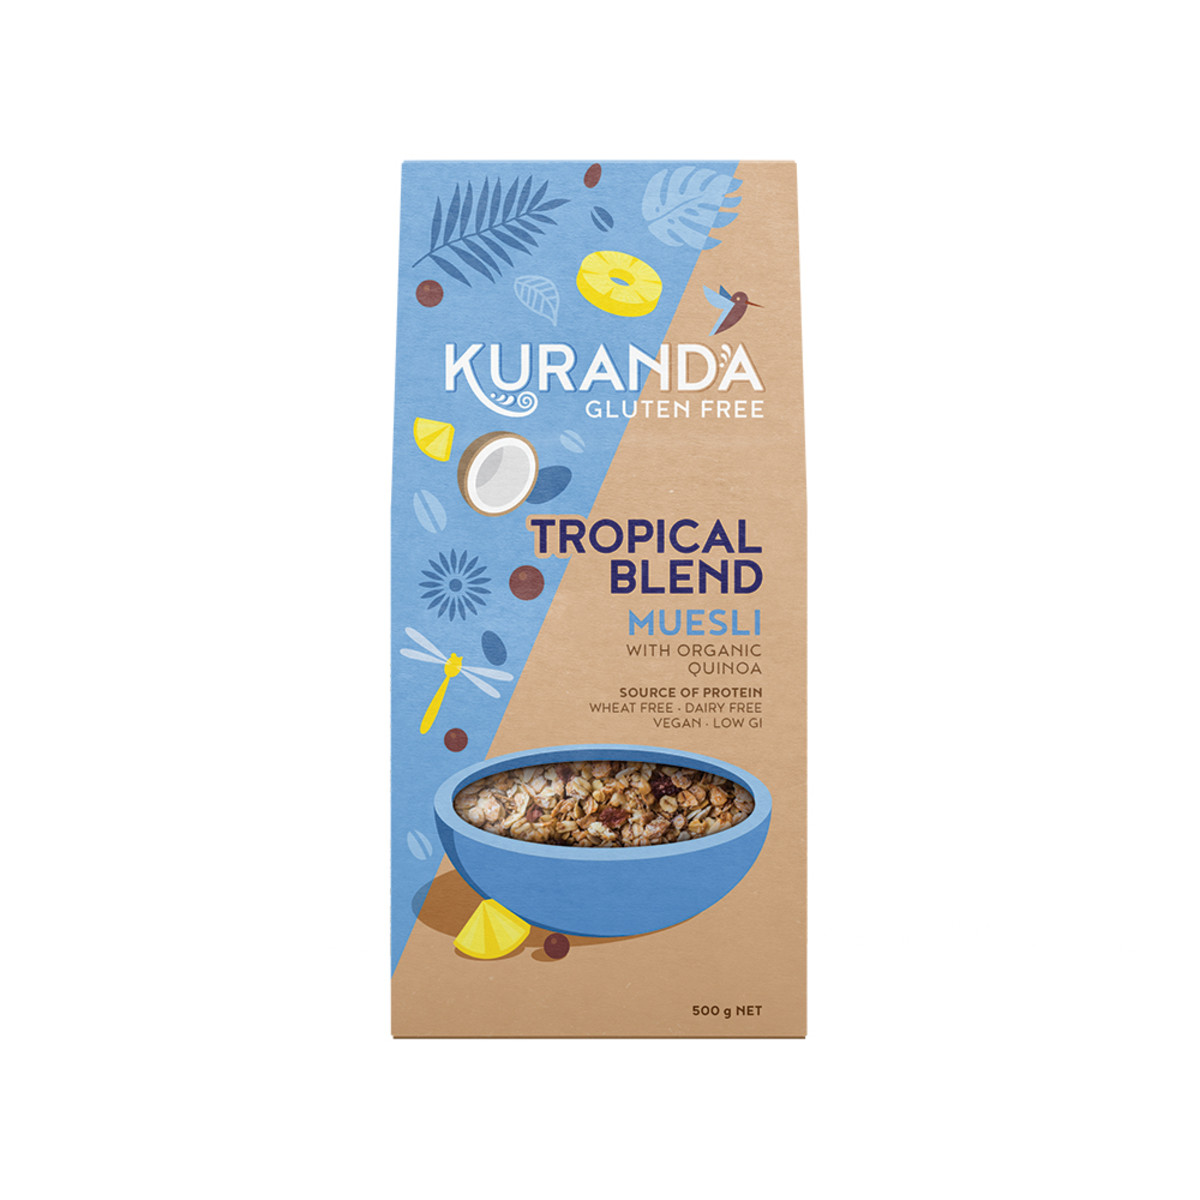 KURANDA - Gluten Free Muesli Tropical Blend